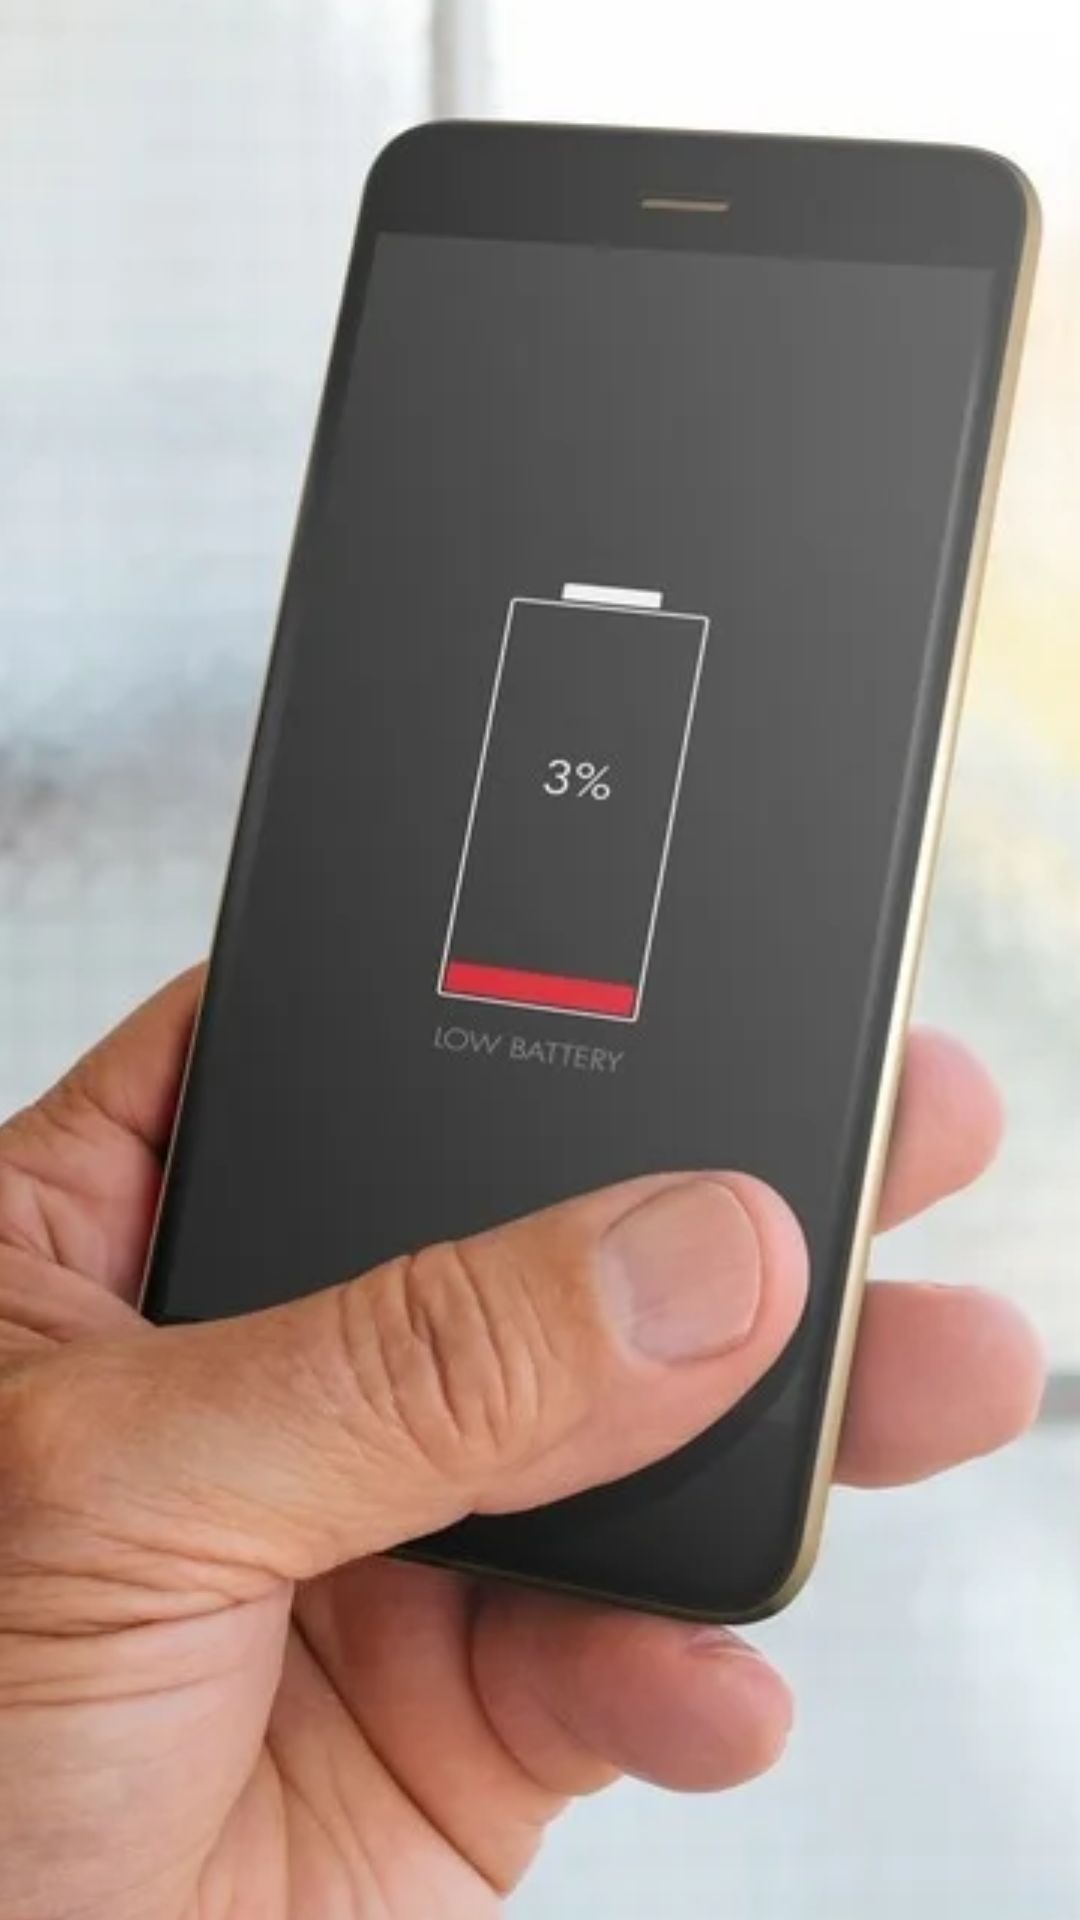 स्मार्टफोन को चार्जिंग में लगाने का सही समय क्या है? जान गए तो सालो साल चलेगा फोन 